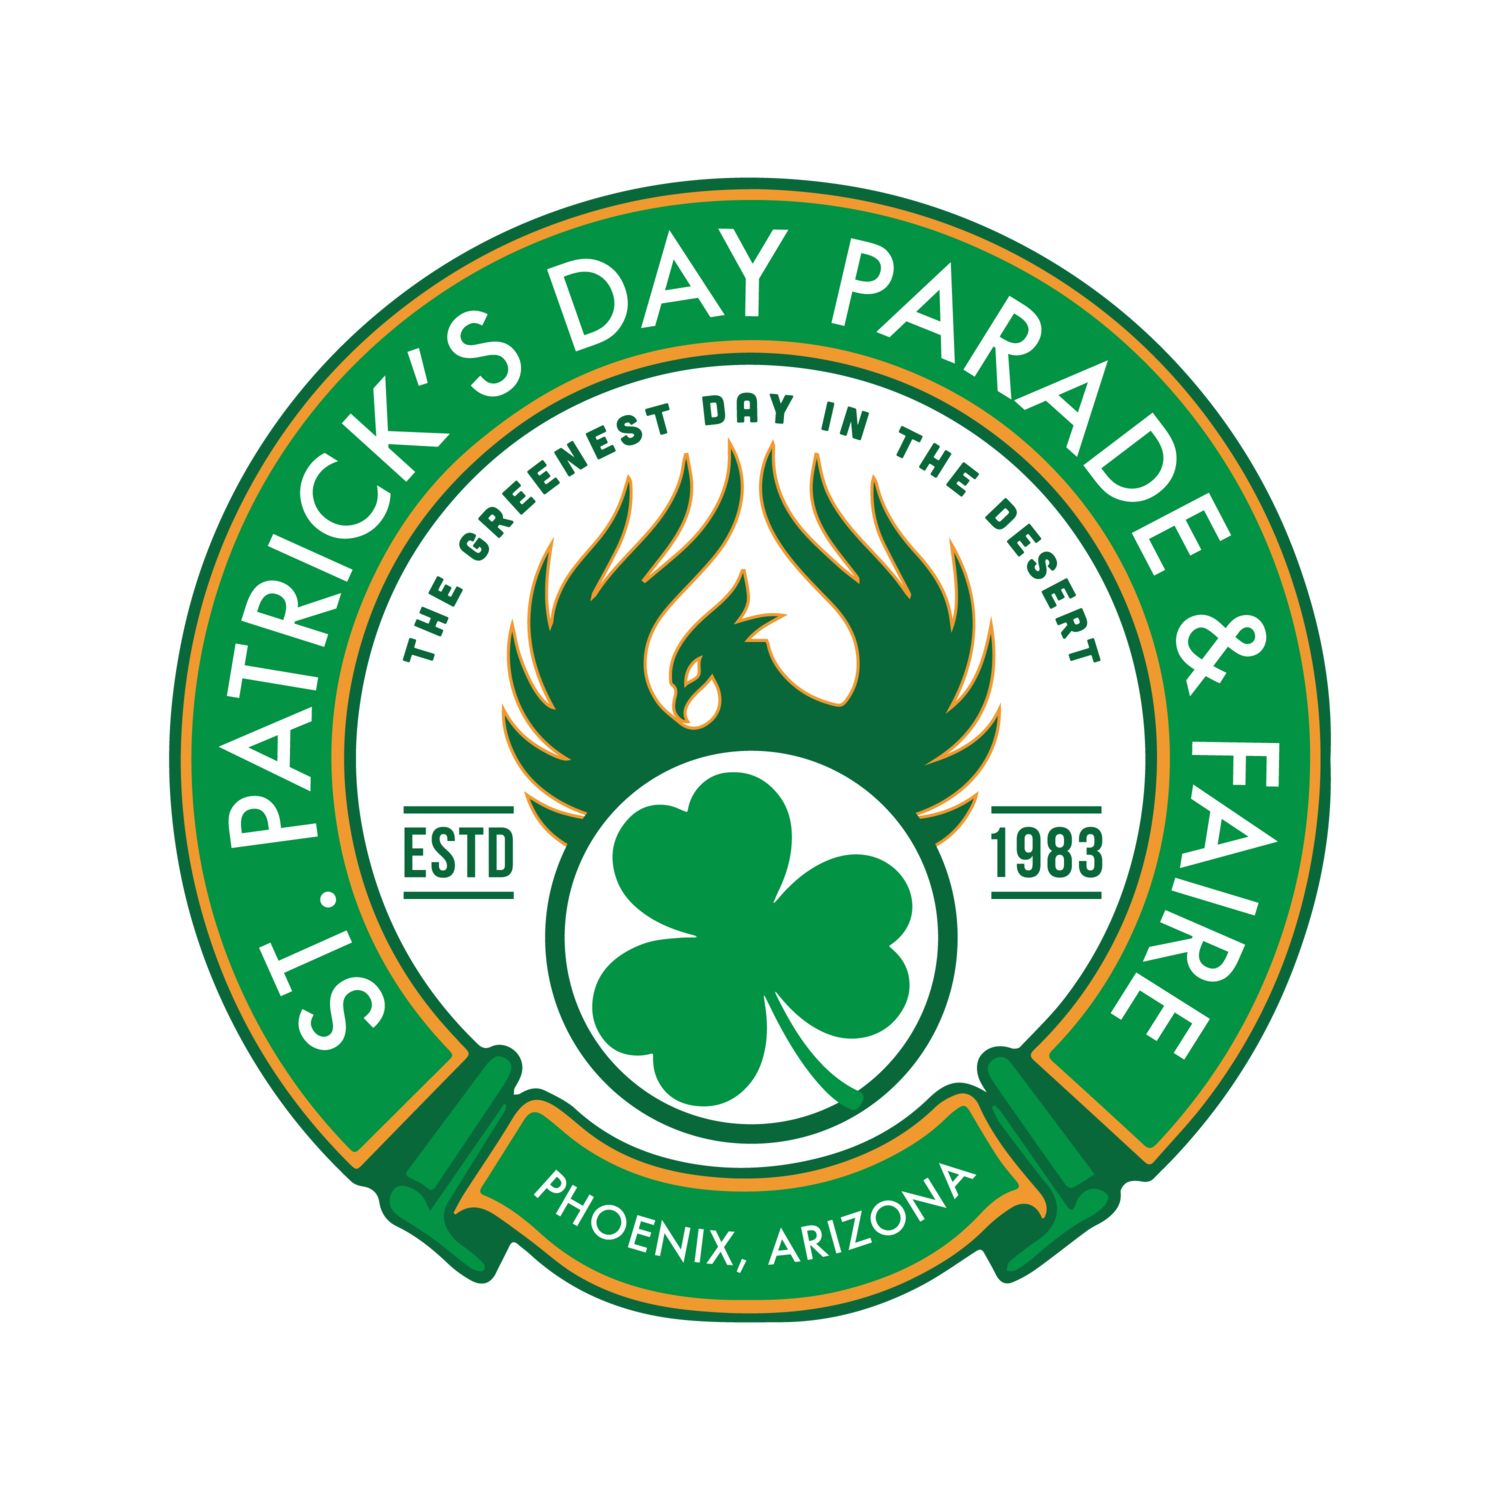 St. Patrick's Day Parade & Faire, Phoenix